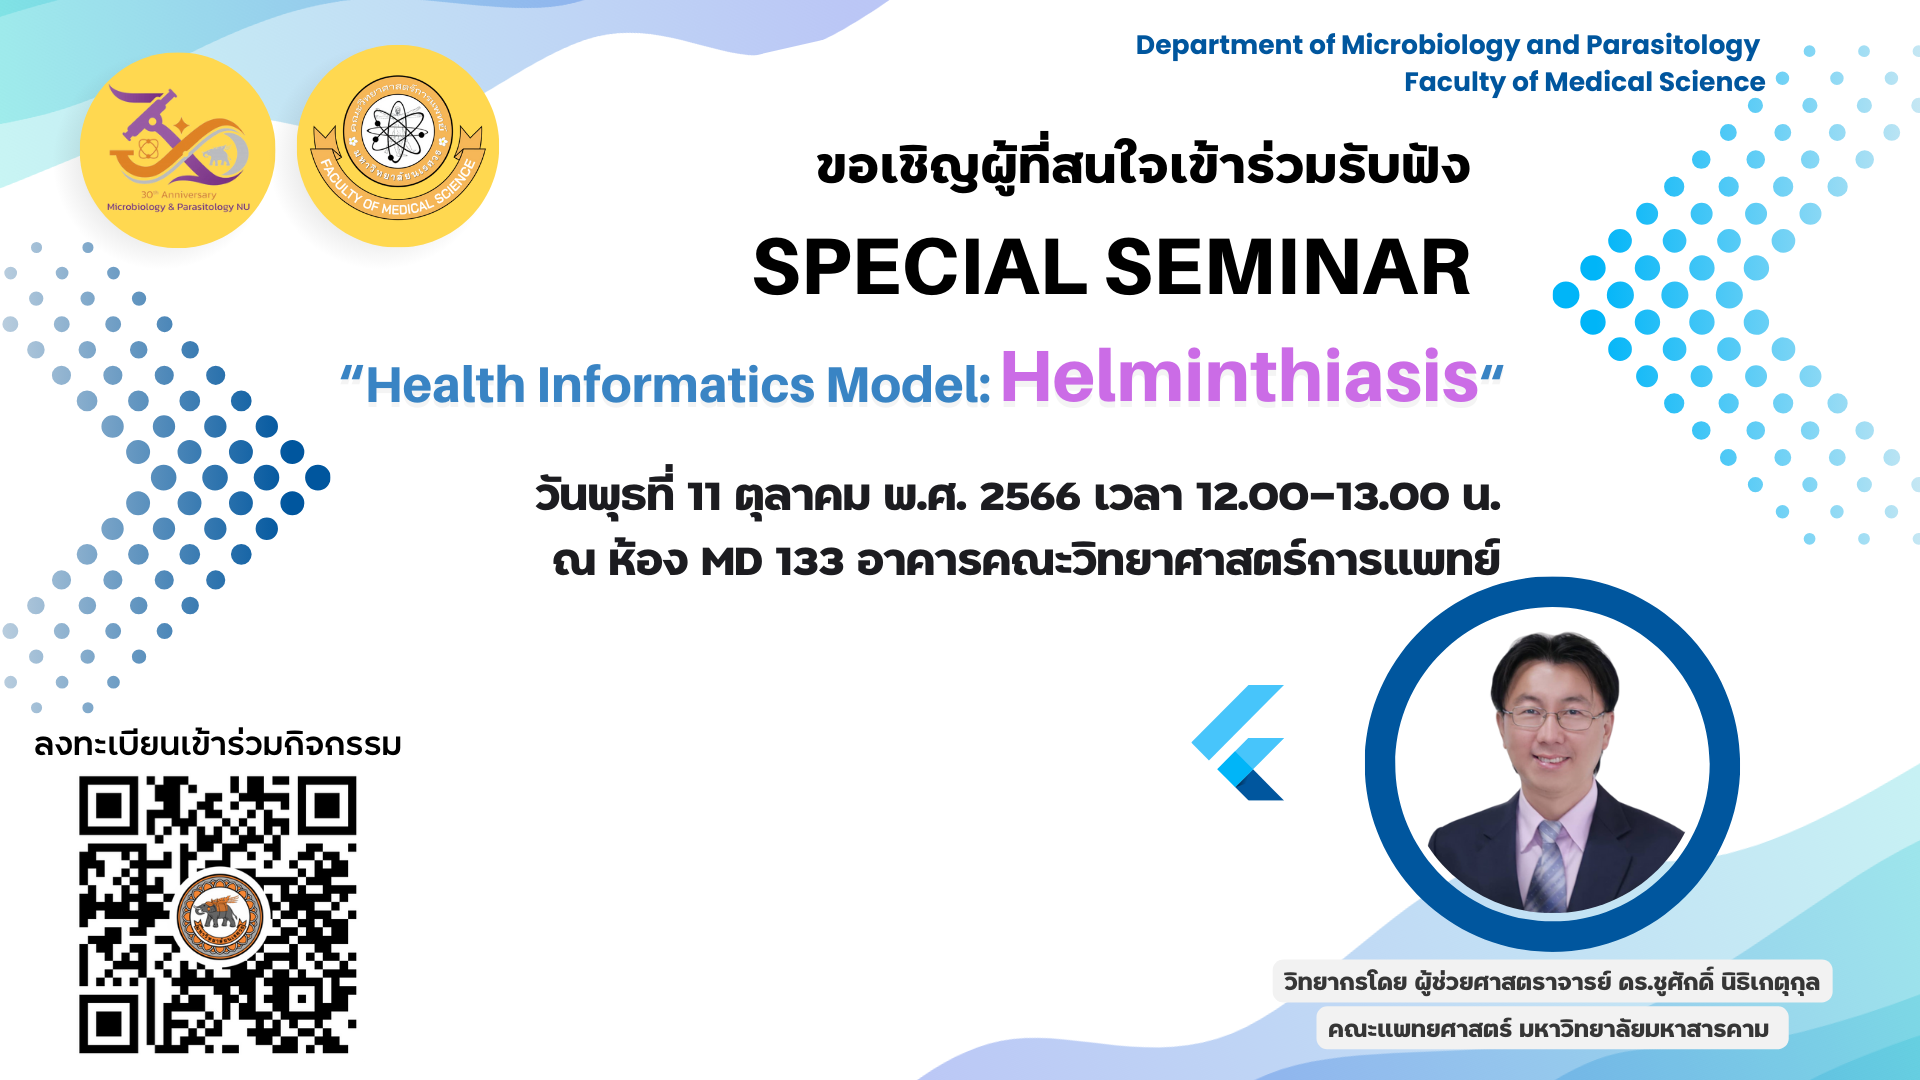 ขอเชิญผู้ที่สนใจเข้าร่วมรับฟัง Special Seminar หัวข้อ Health Informatics Model: Helminthiasis